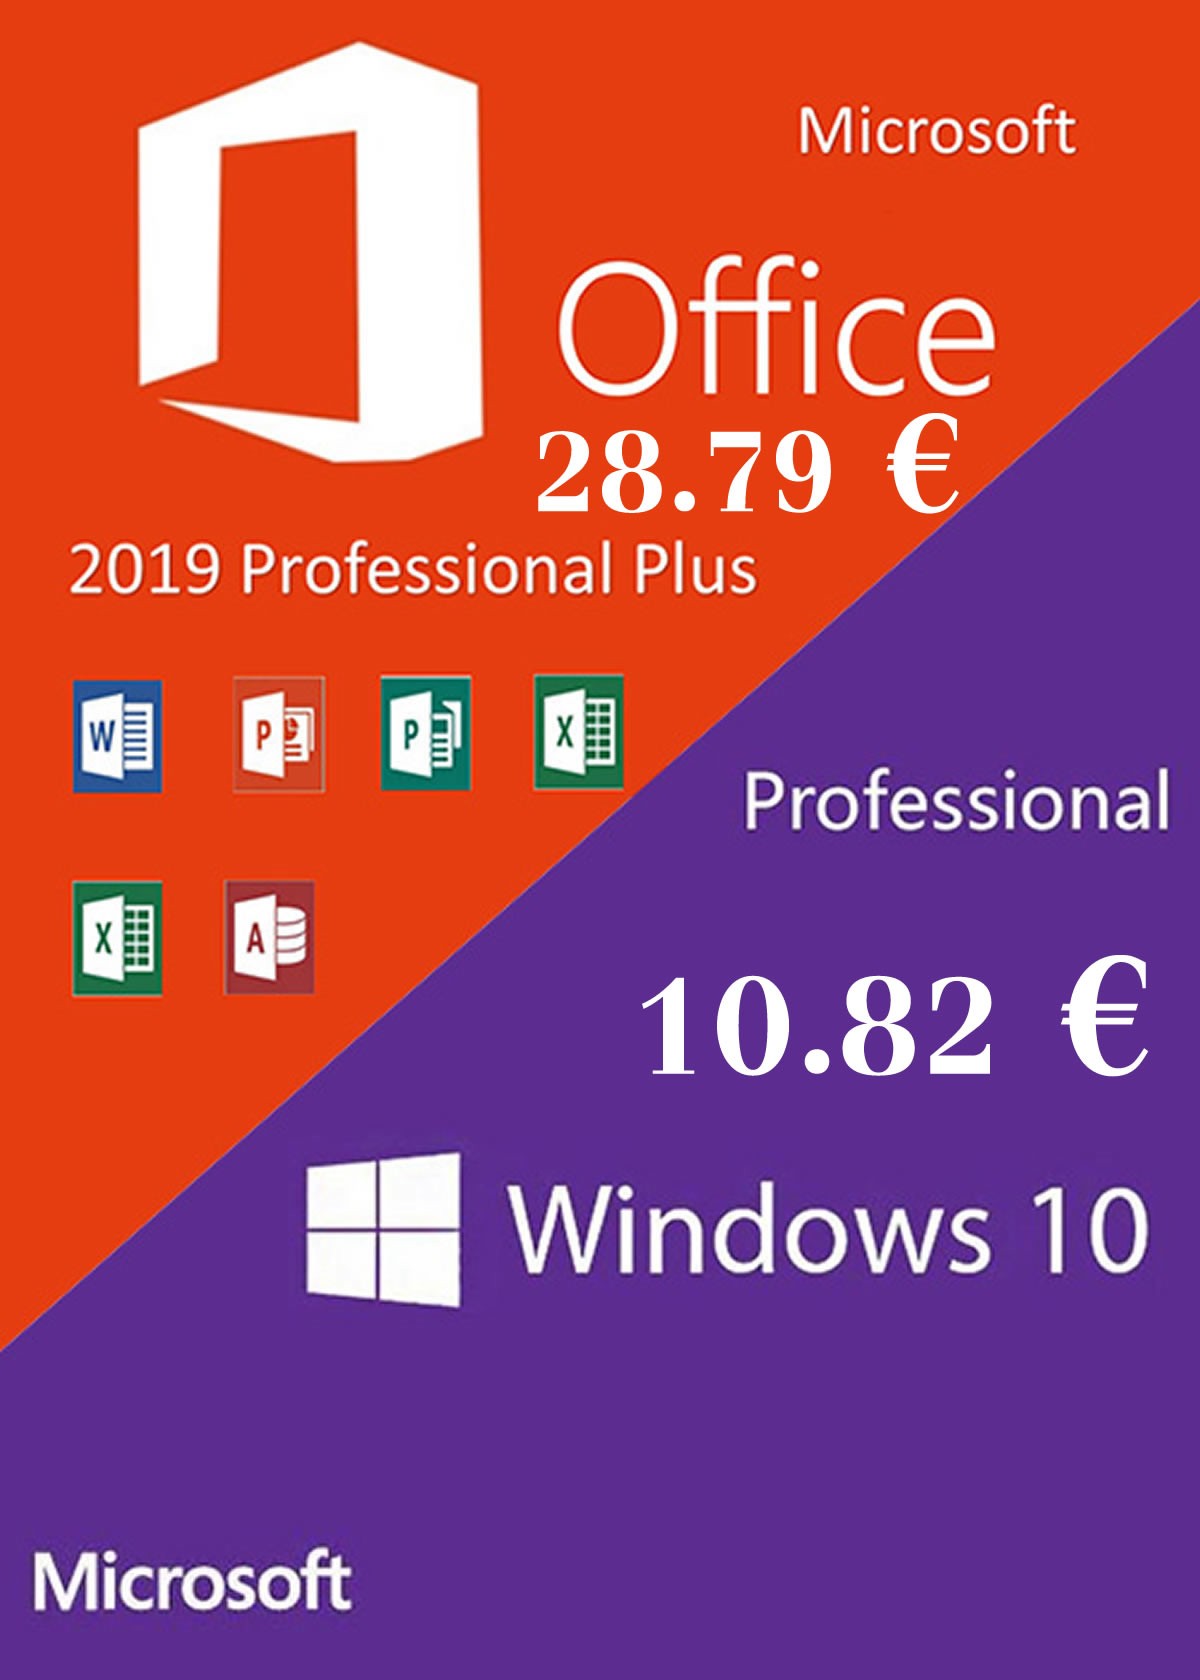 microsoft windows-10 office-2016 07-02-2020